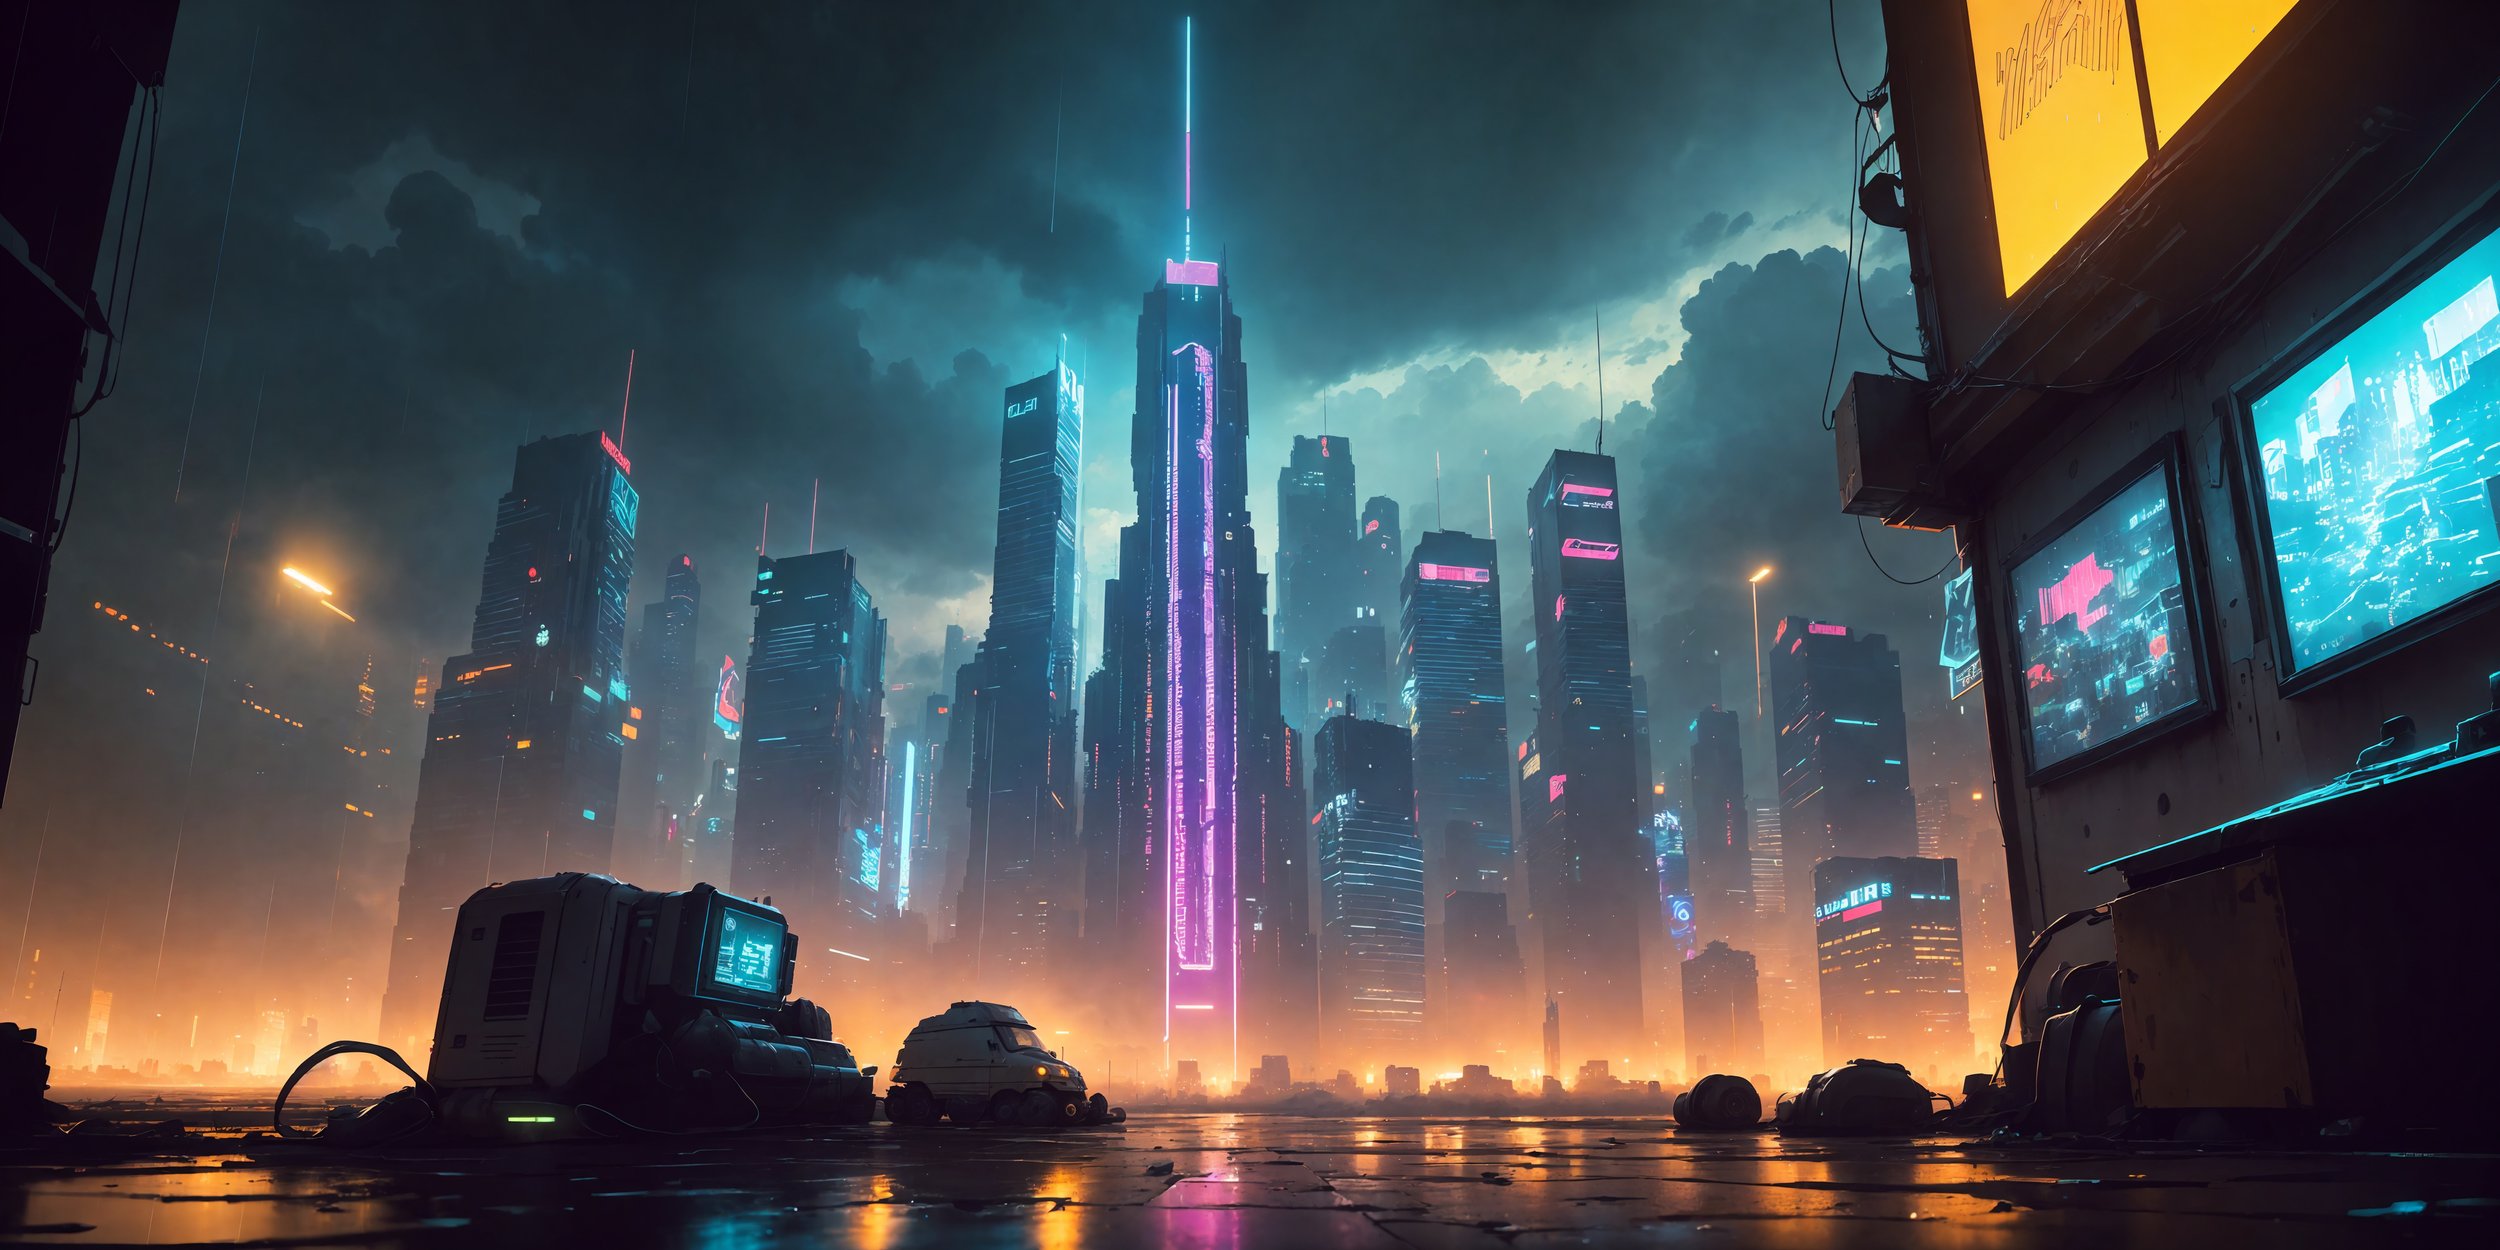 High-Tech Cyberpunk City Wallpapers — papr